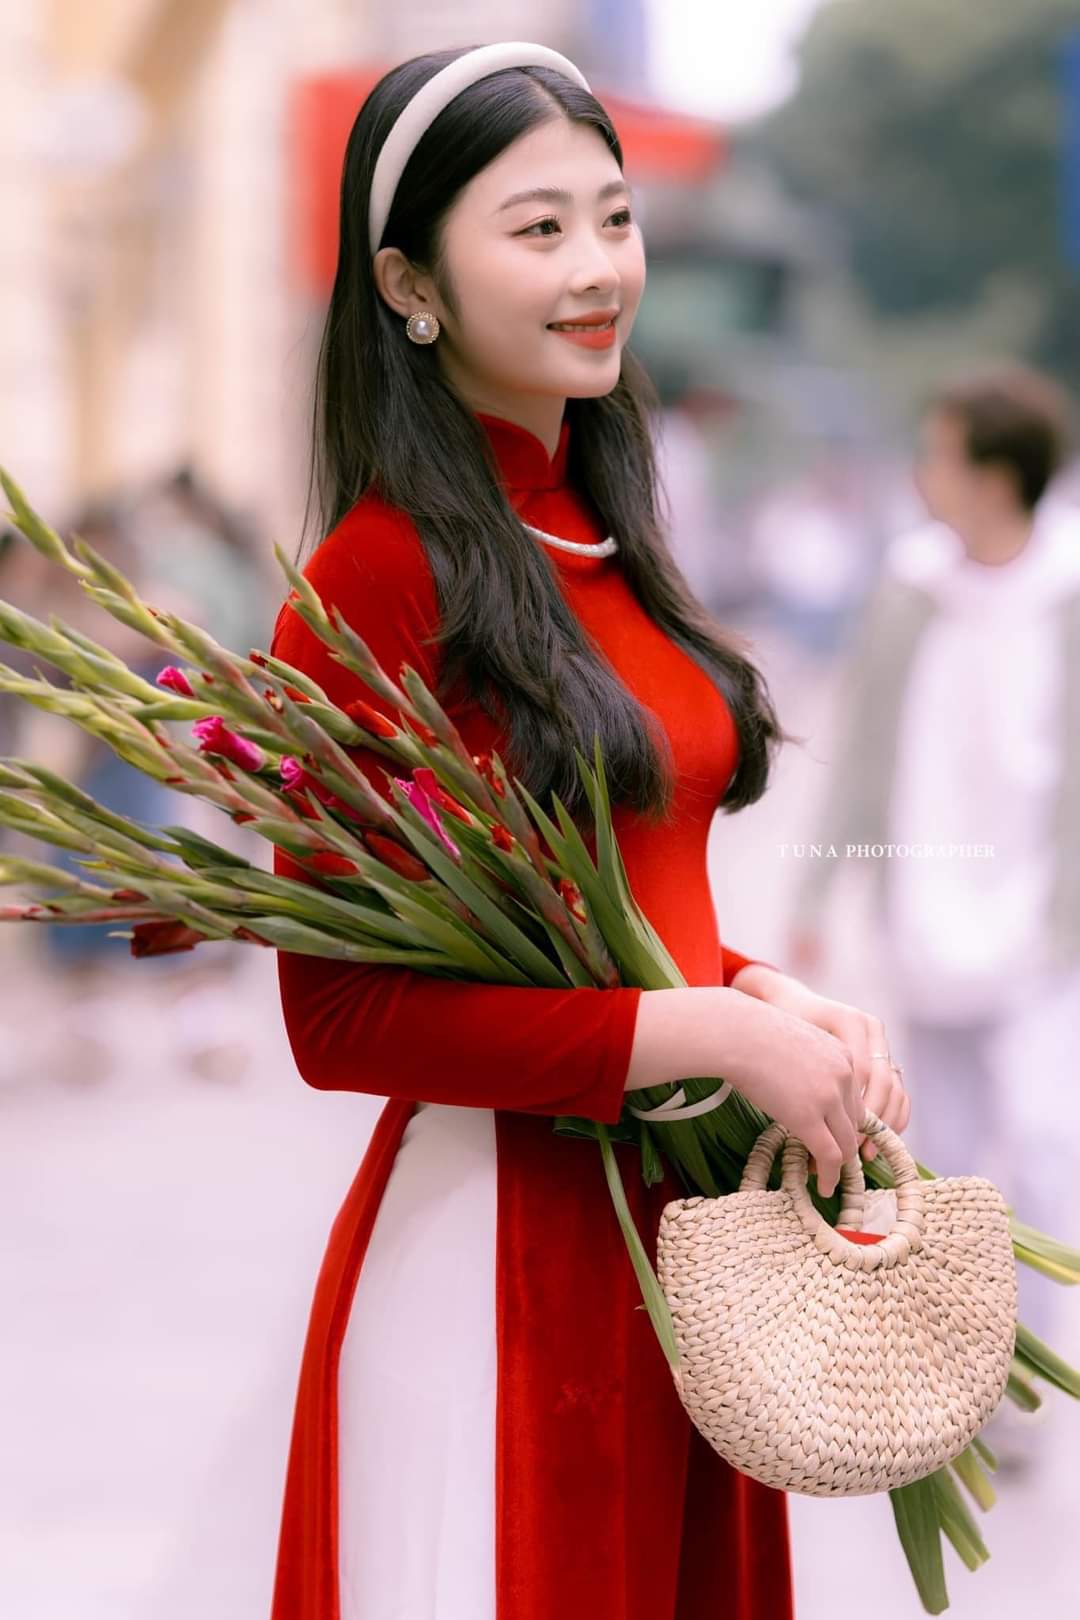 Hanoi's woman